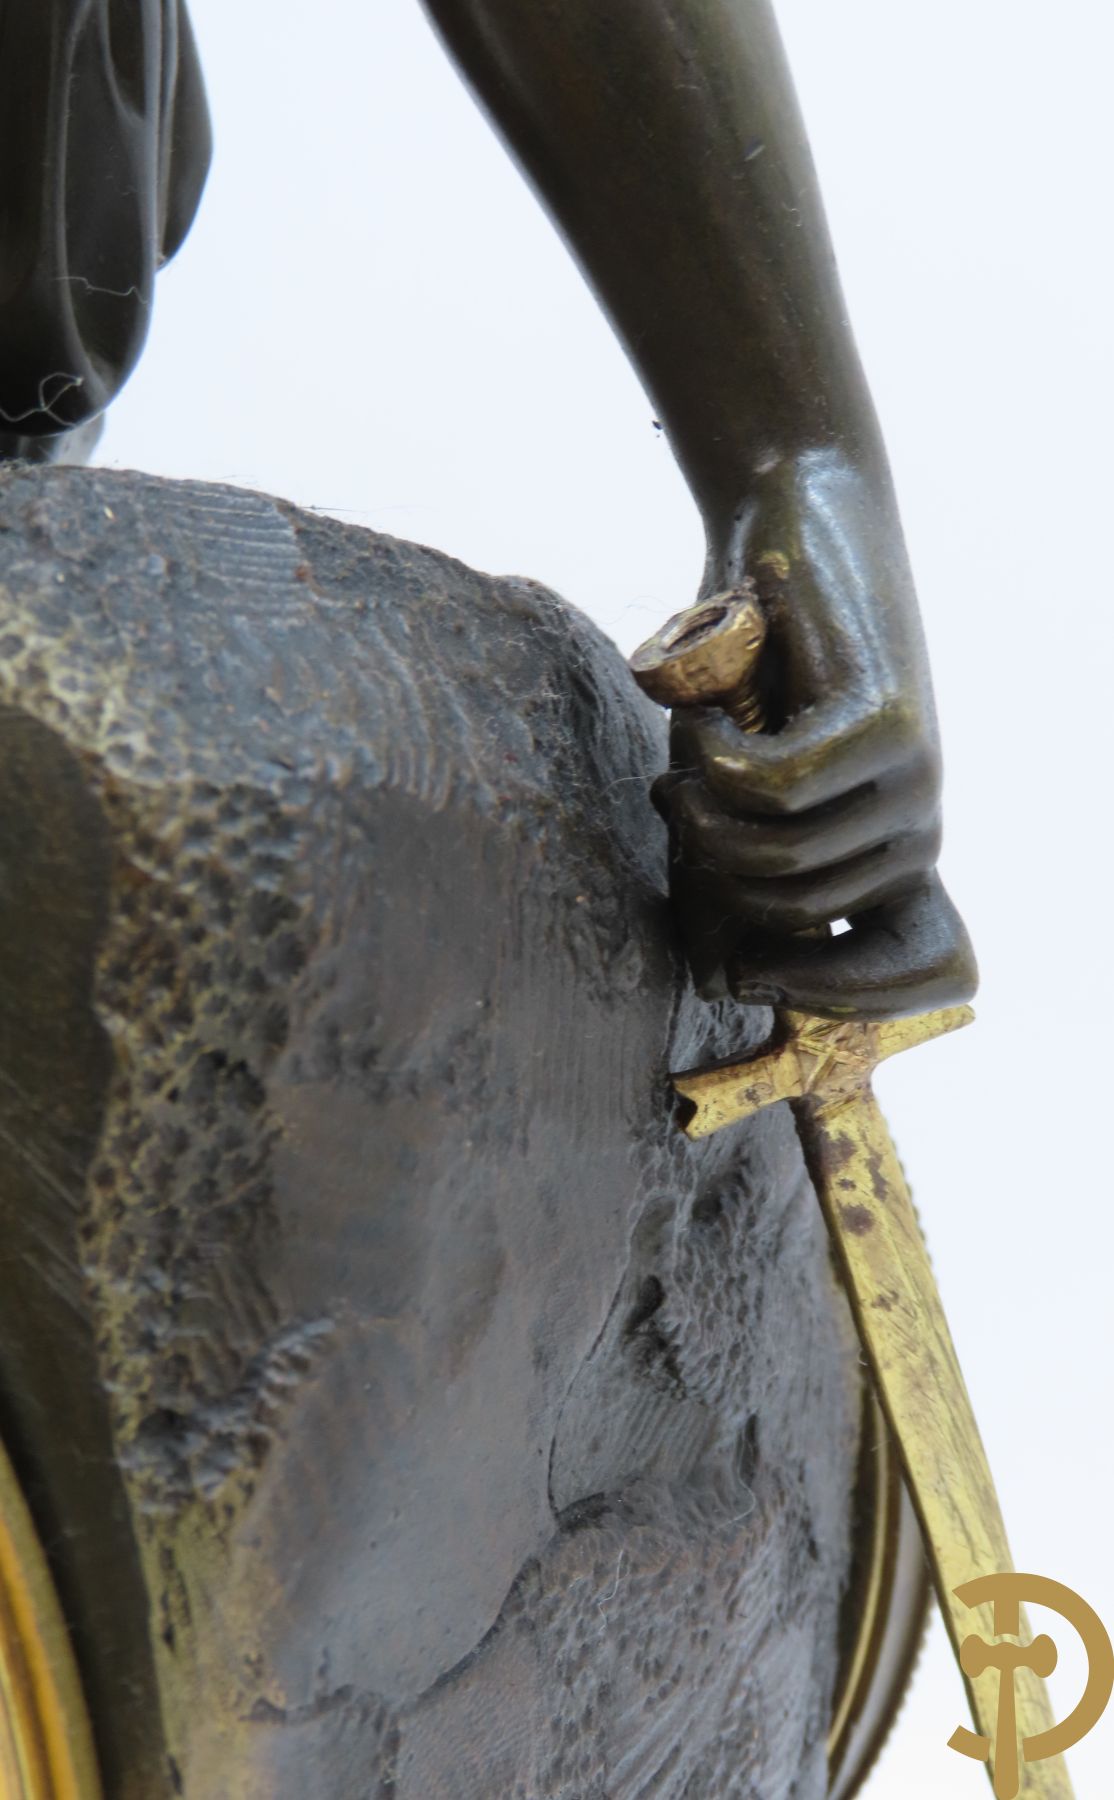 Man met schild en zwaard op bronzen pendule gezeten